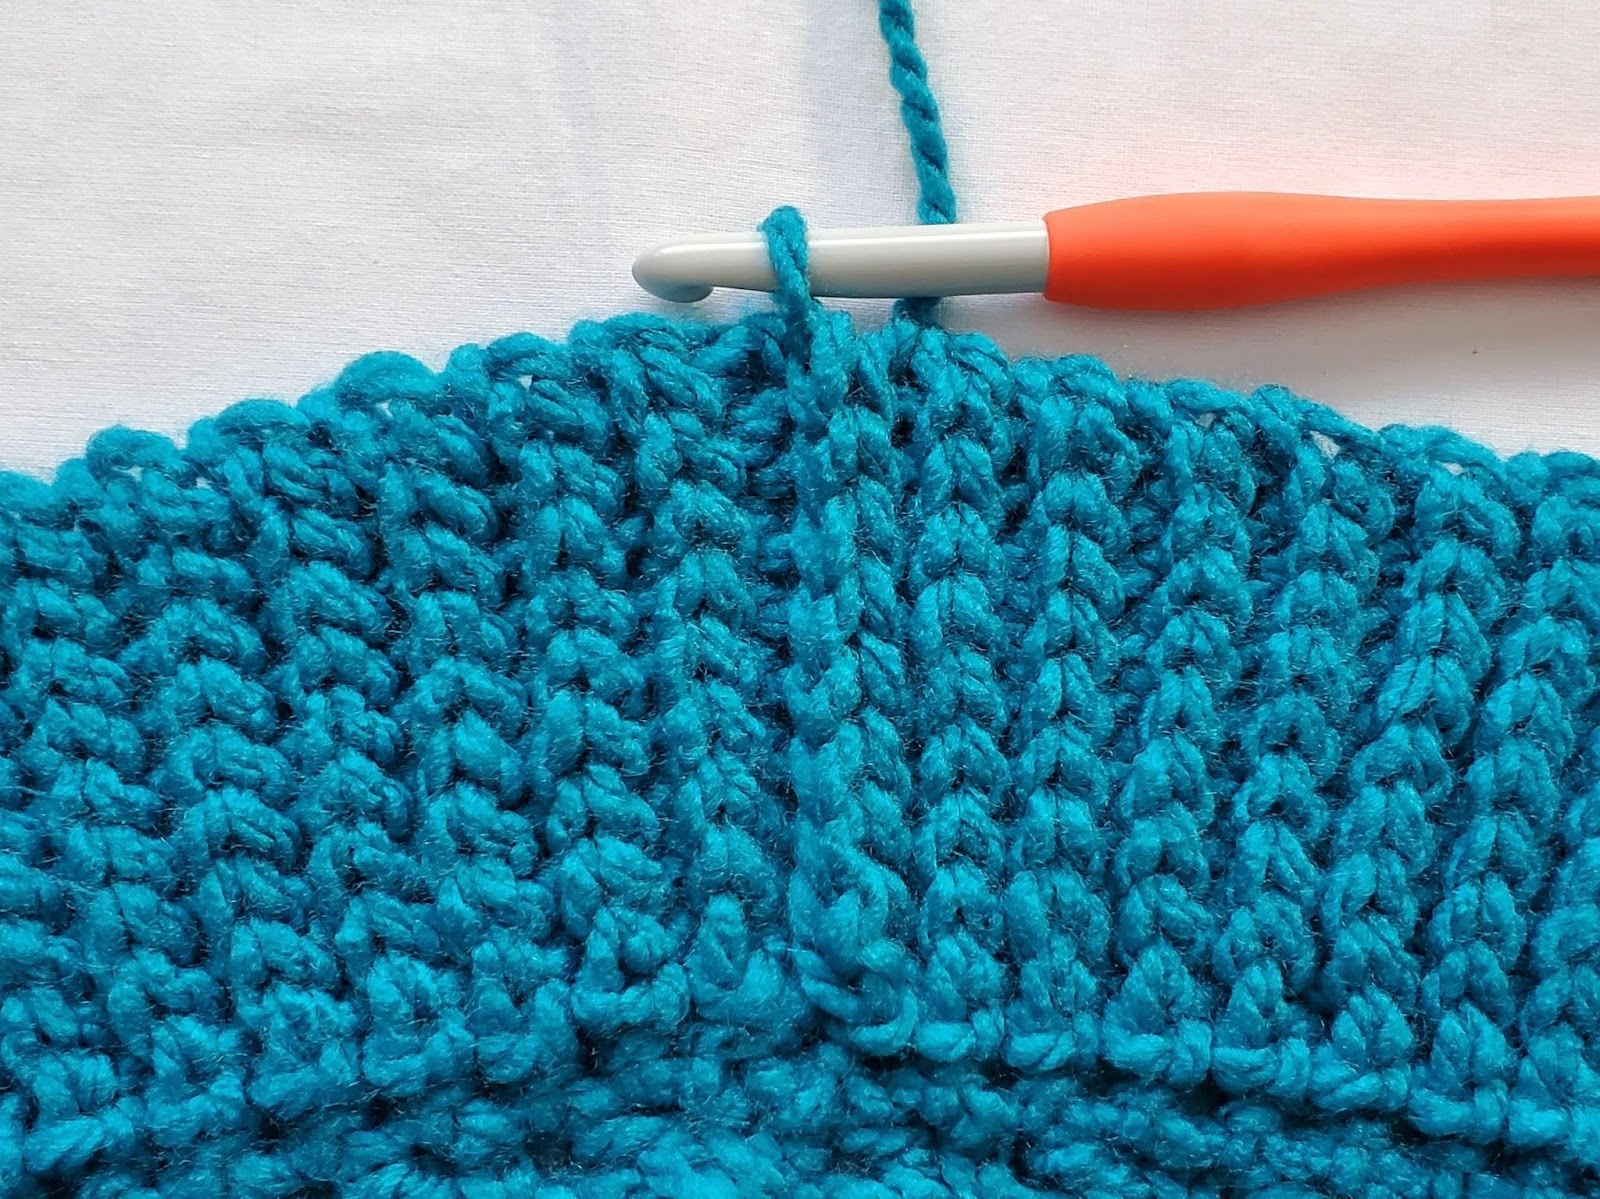 The Dead of Winter Capelet - Free Crochet Pattern